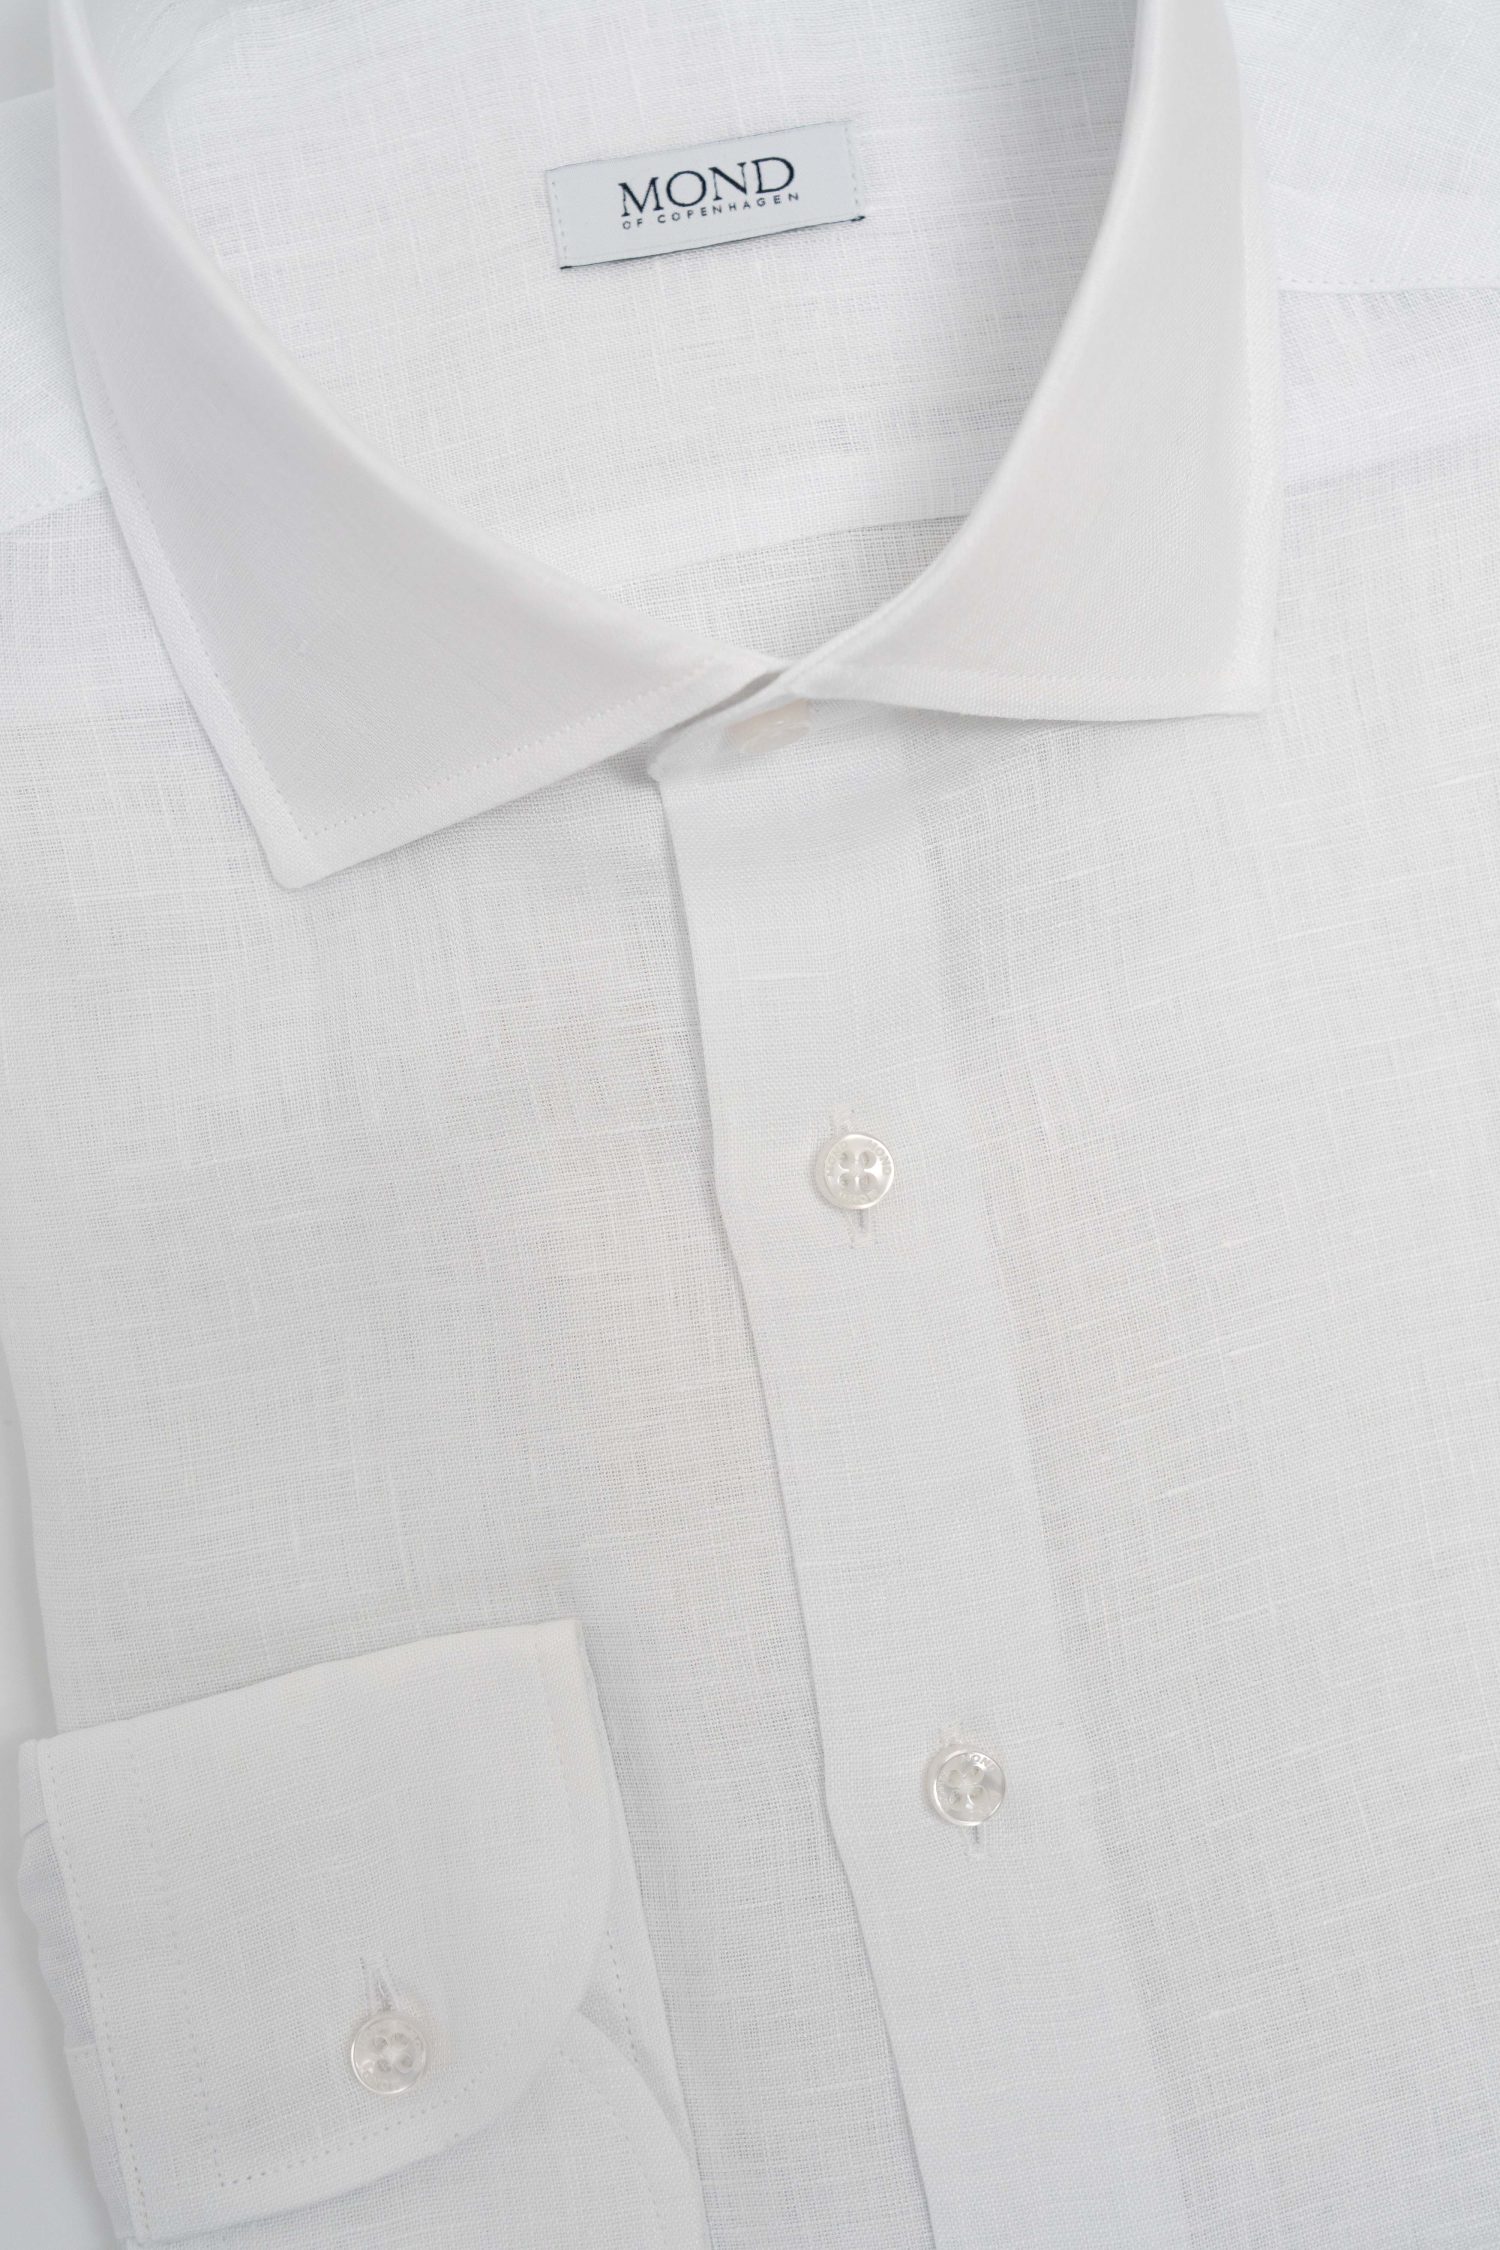 custom made white linen shirt